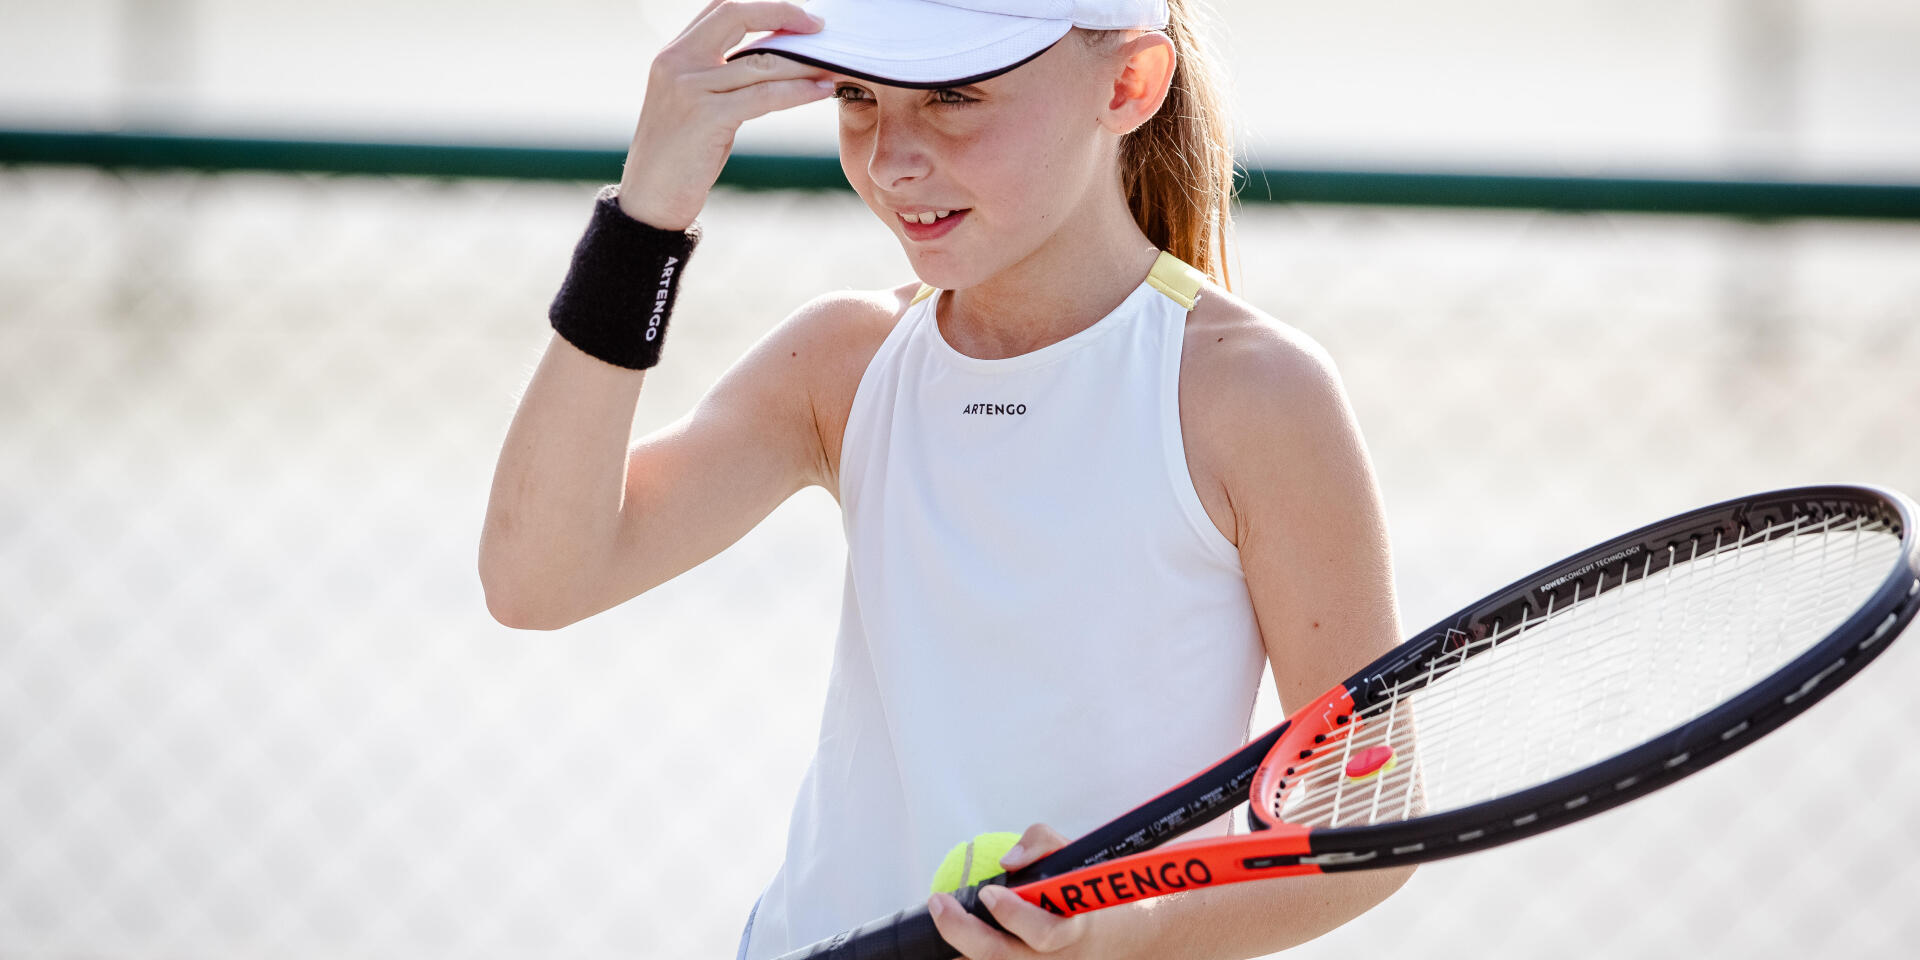 une jeune fille porte une raquette de tennis